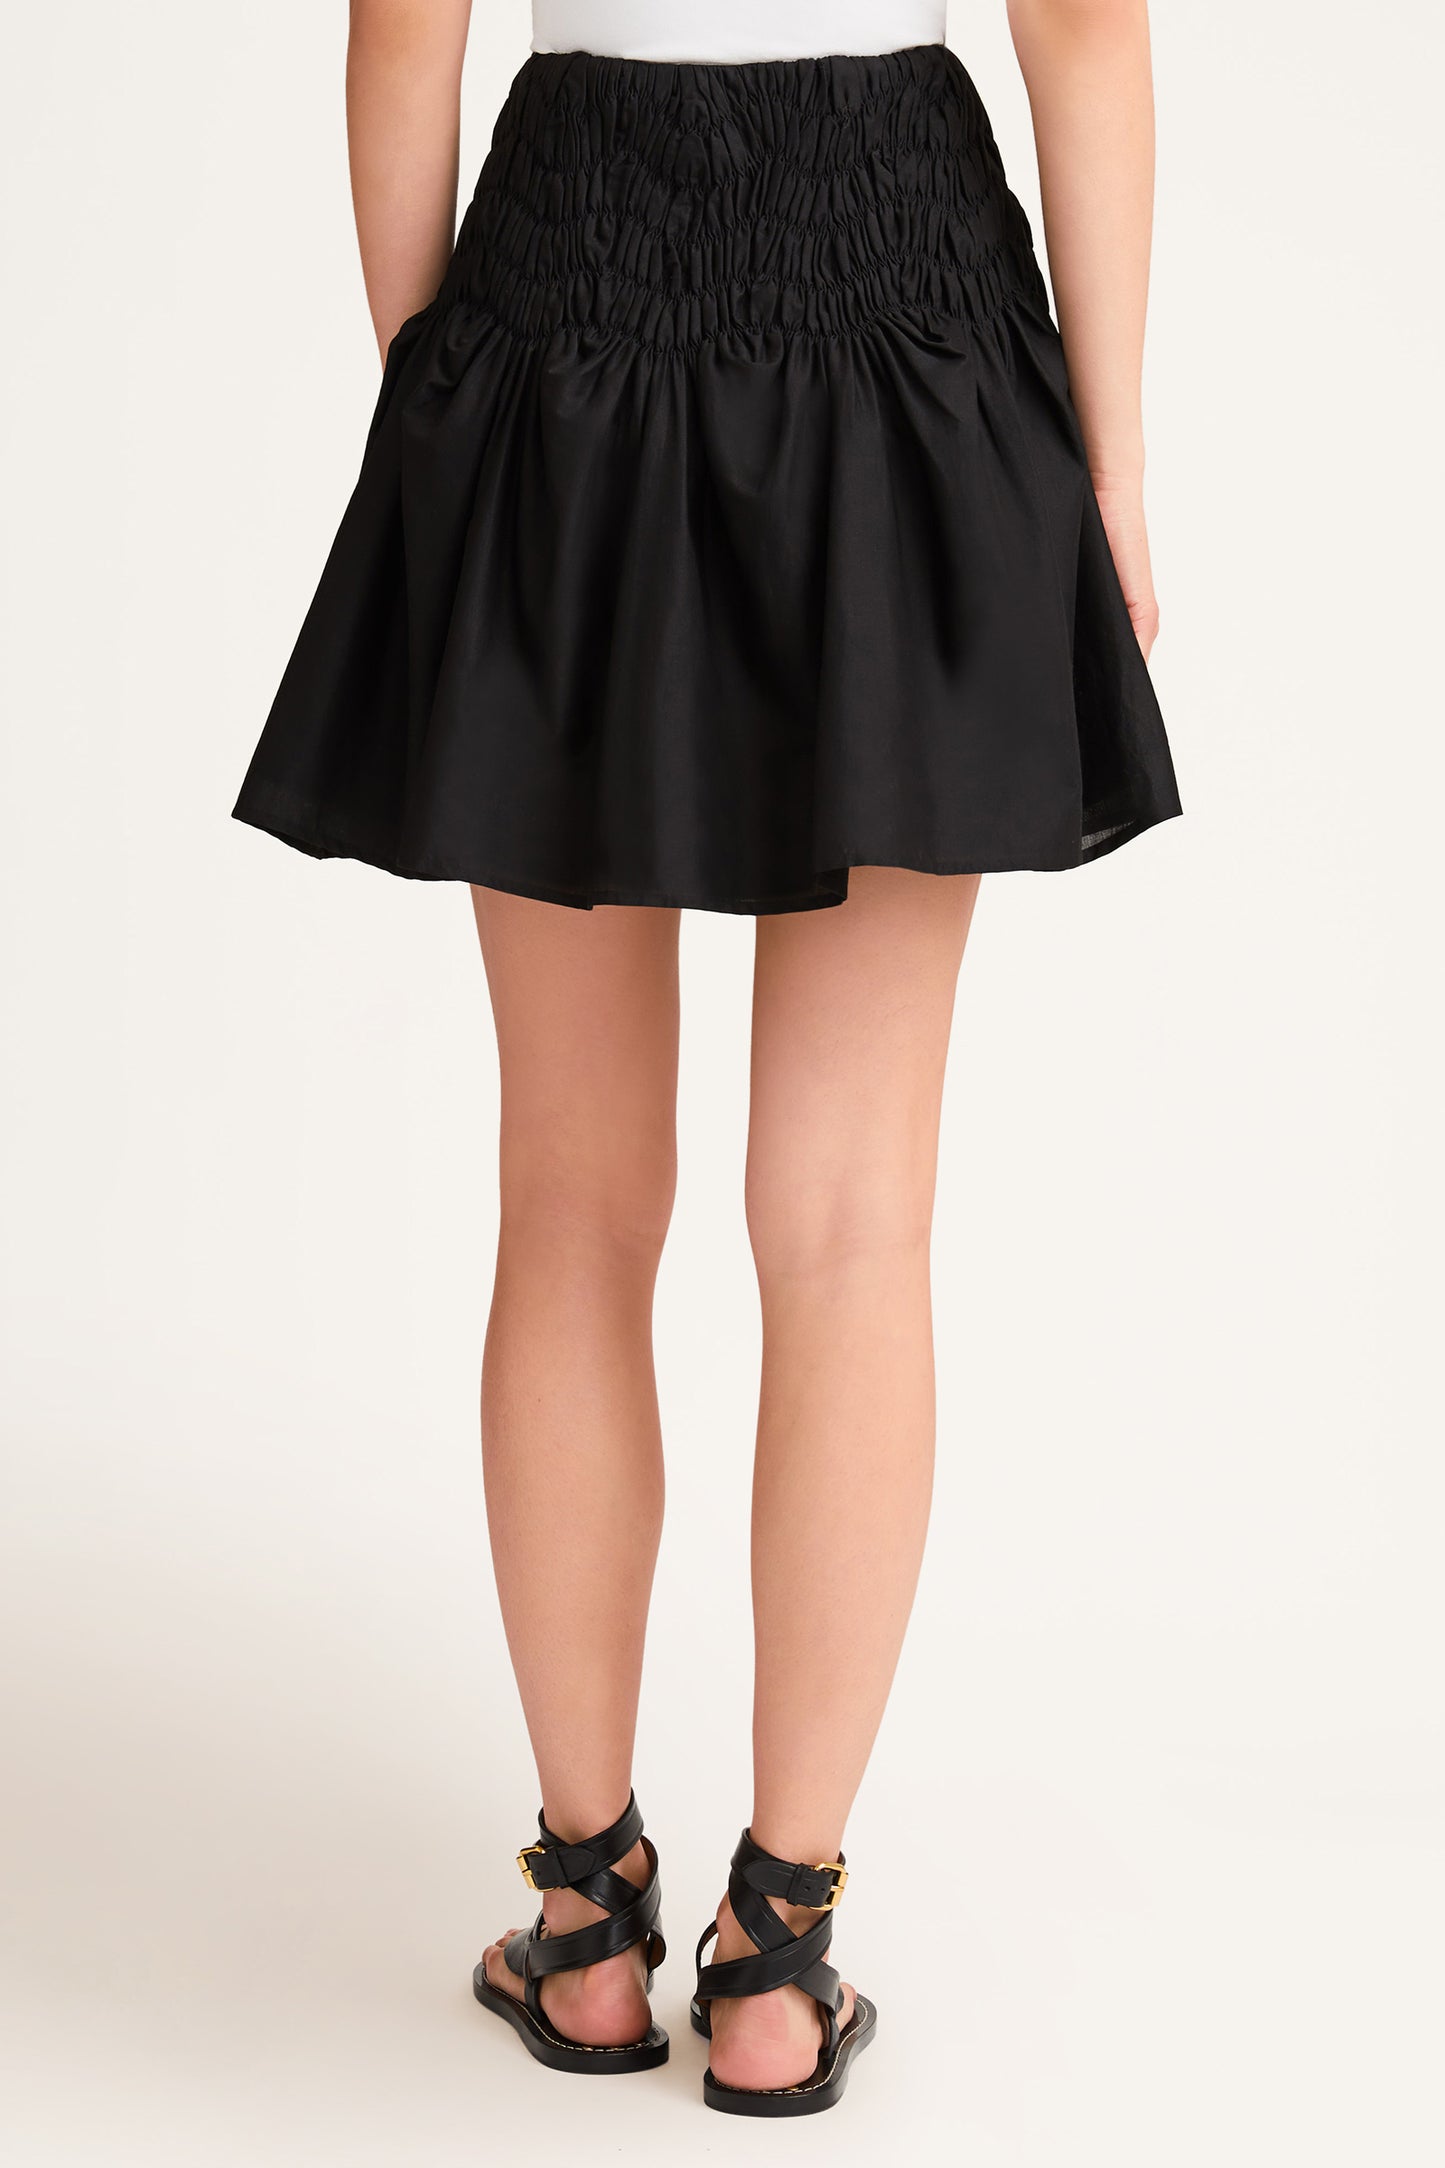 Elysian Skirt in Black